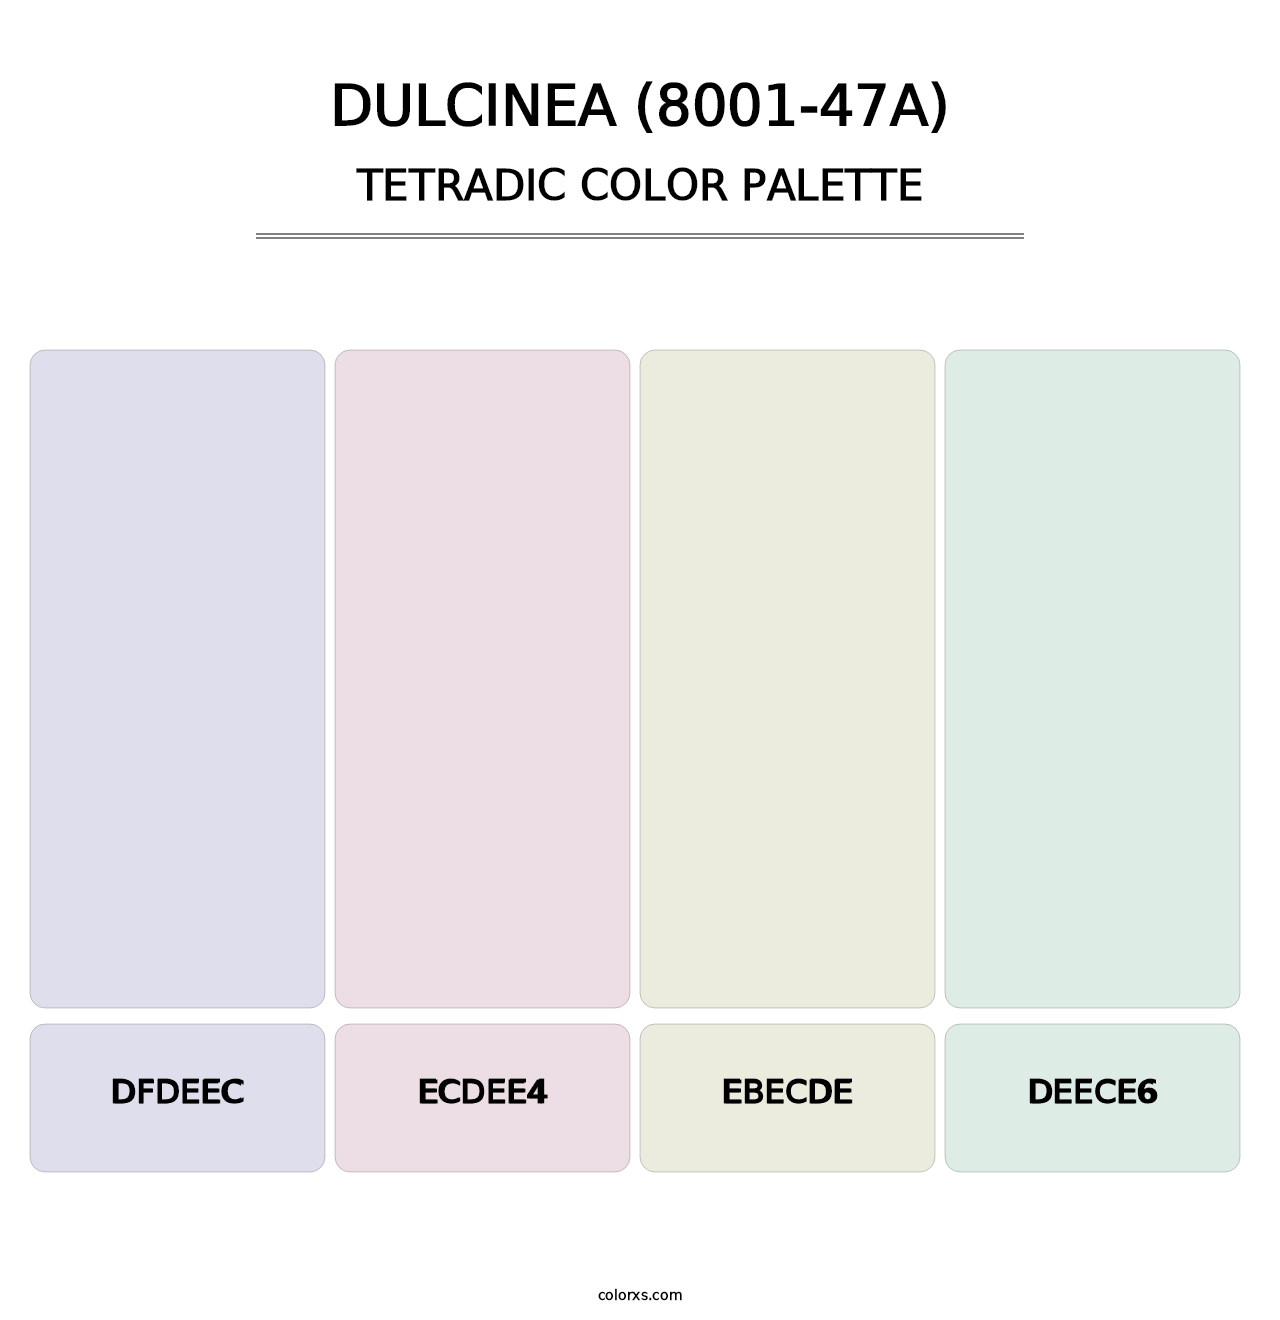 Dulcinea (8001-47A) - Tetradic Color Palette